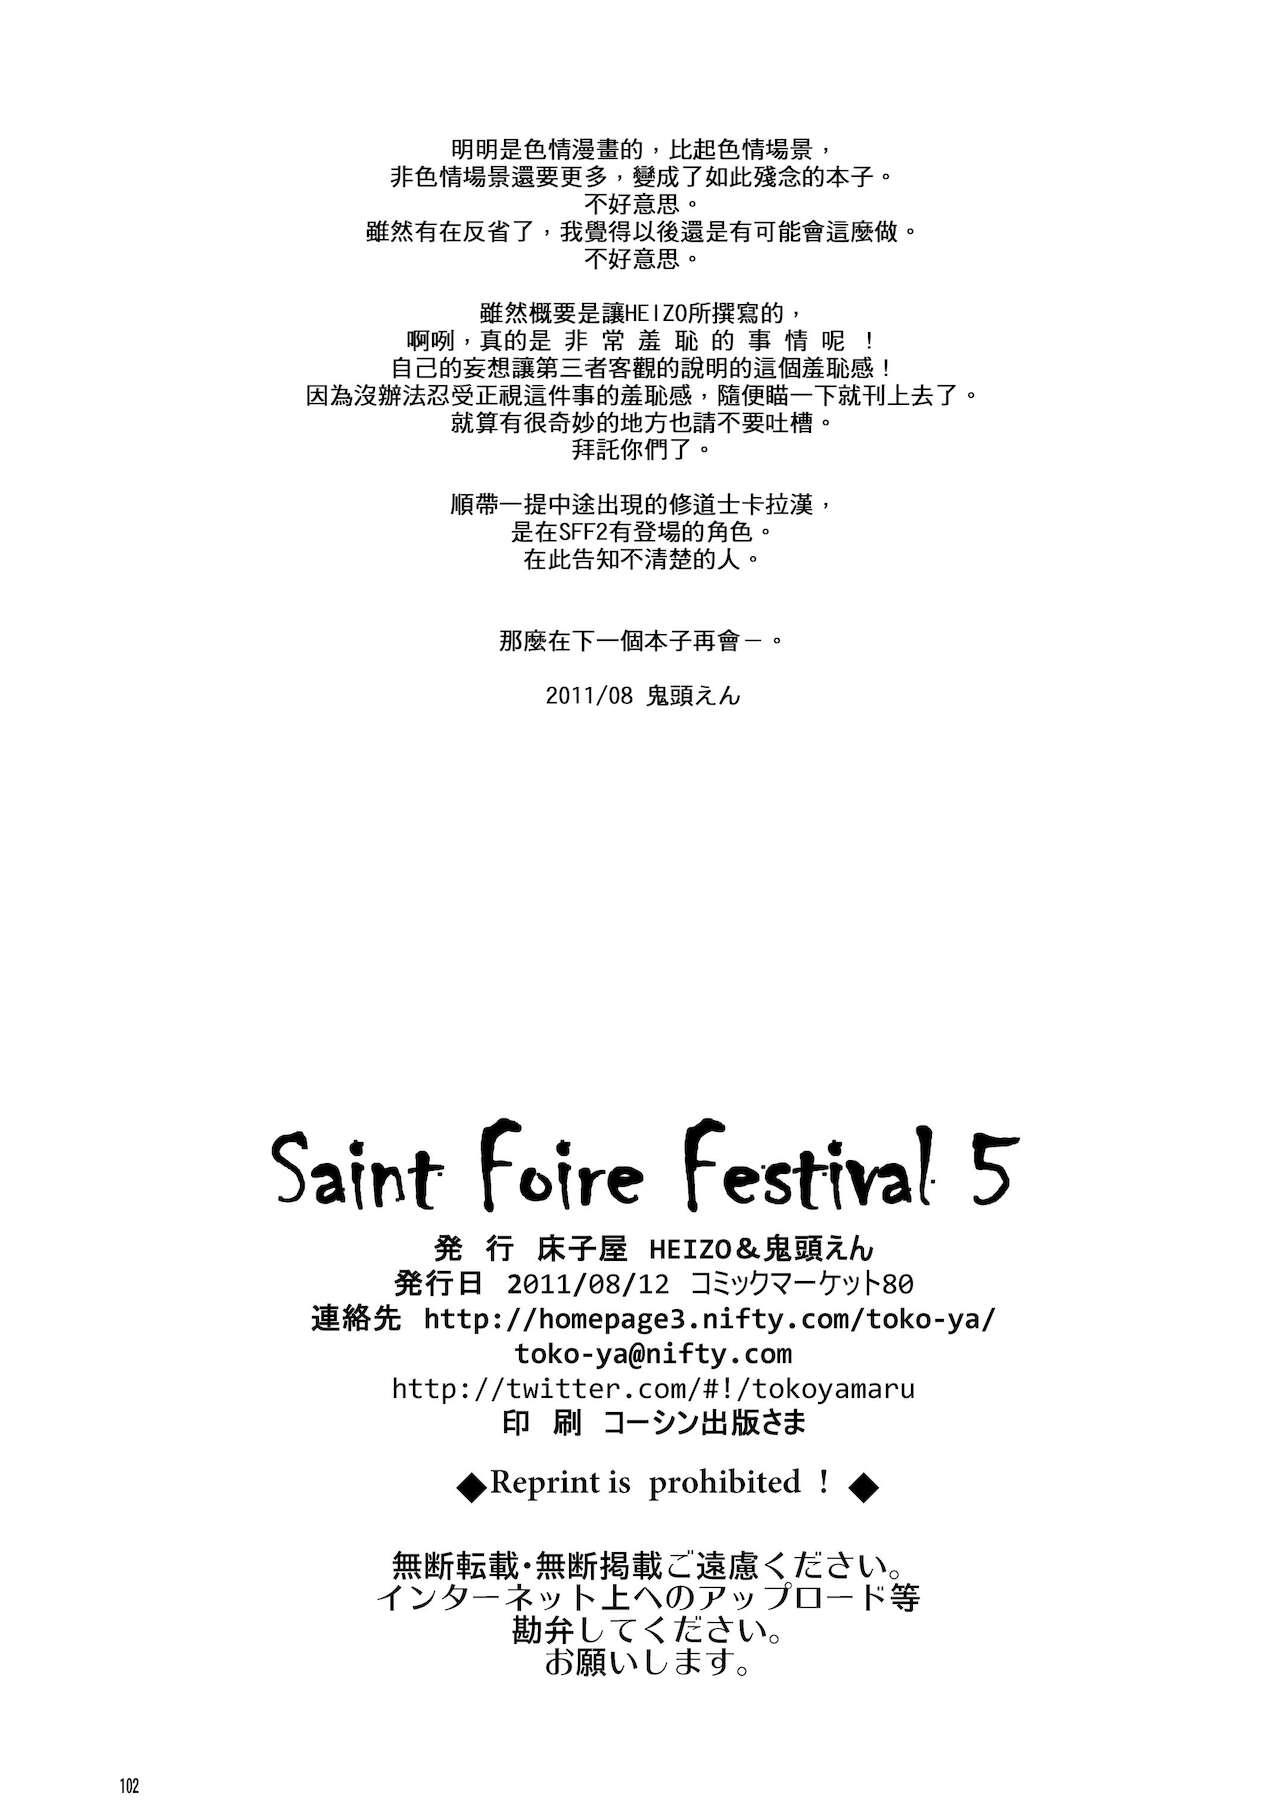 Saint Foire Festival 5 Richildis 101